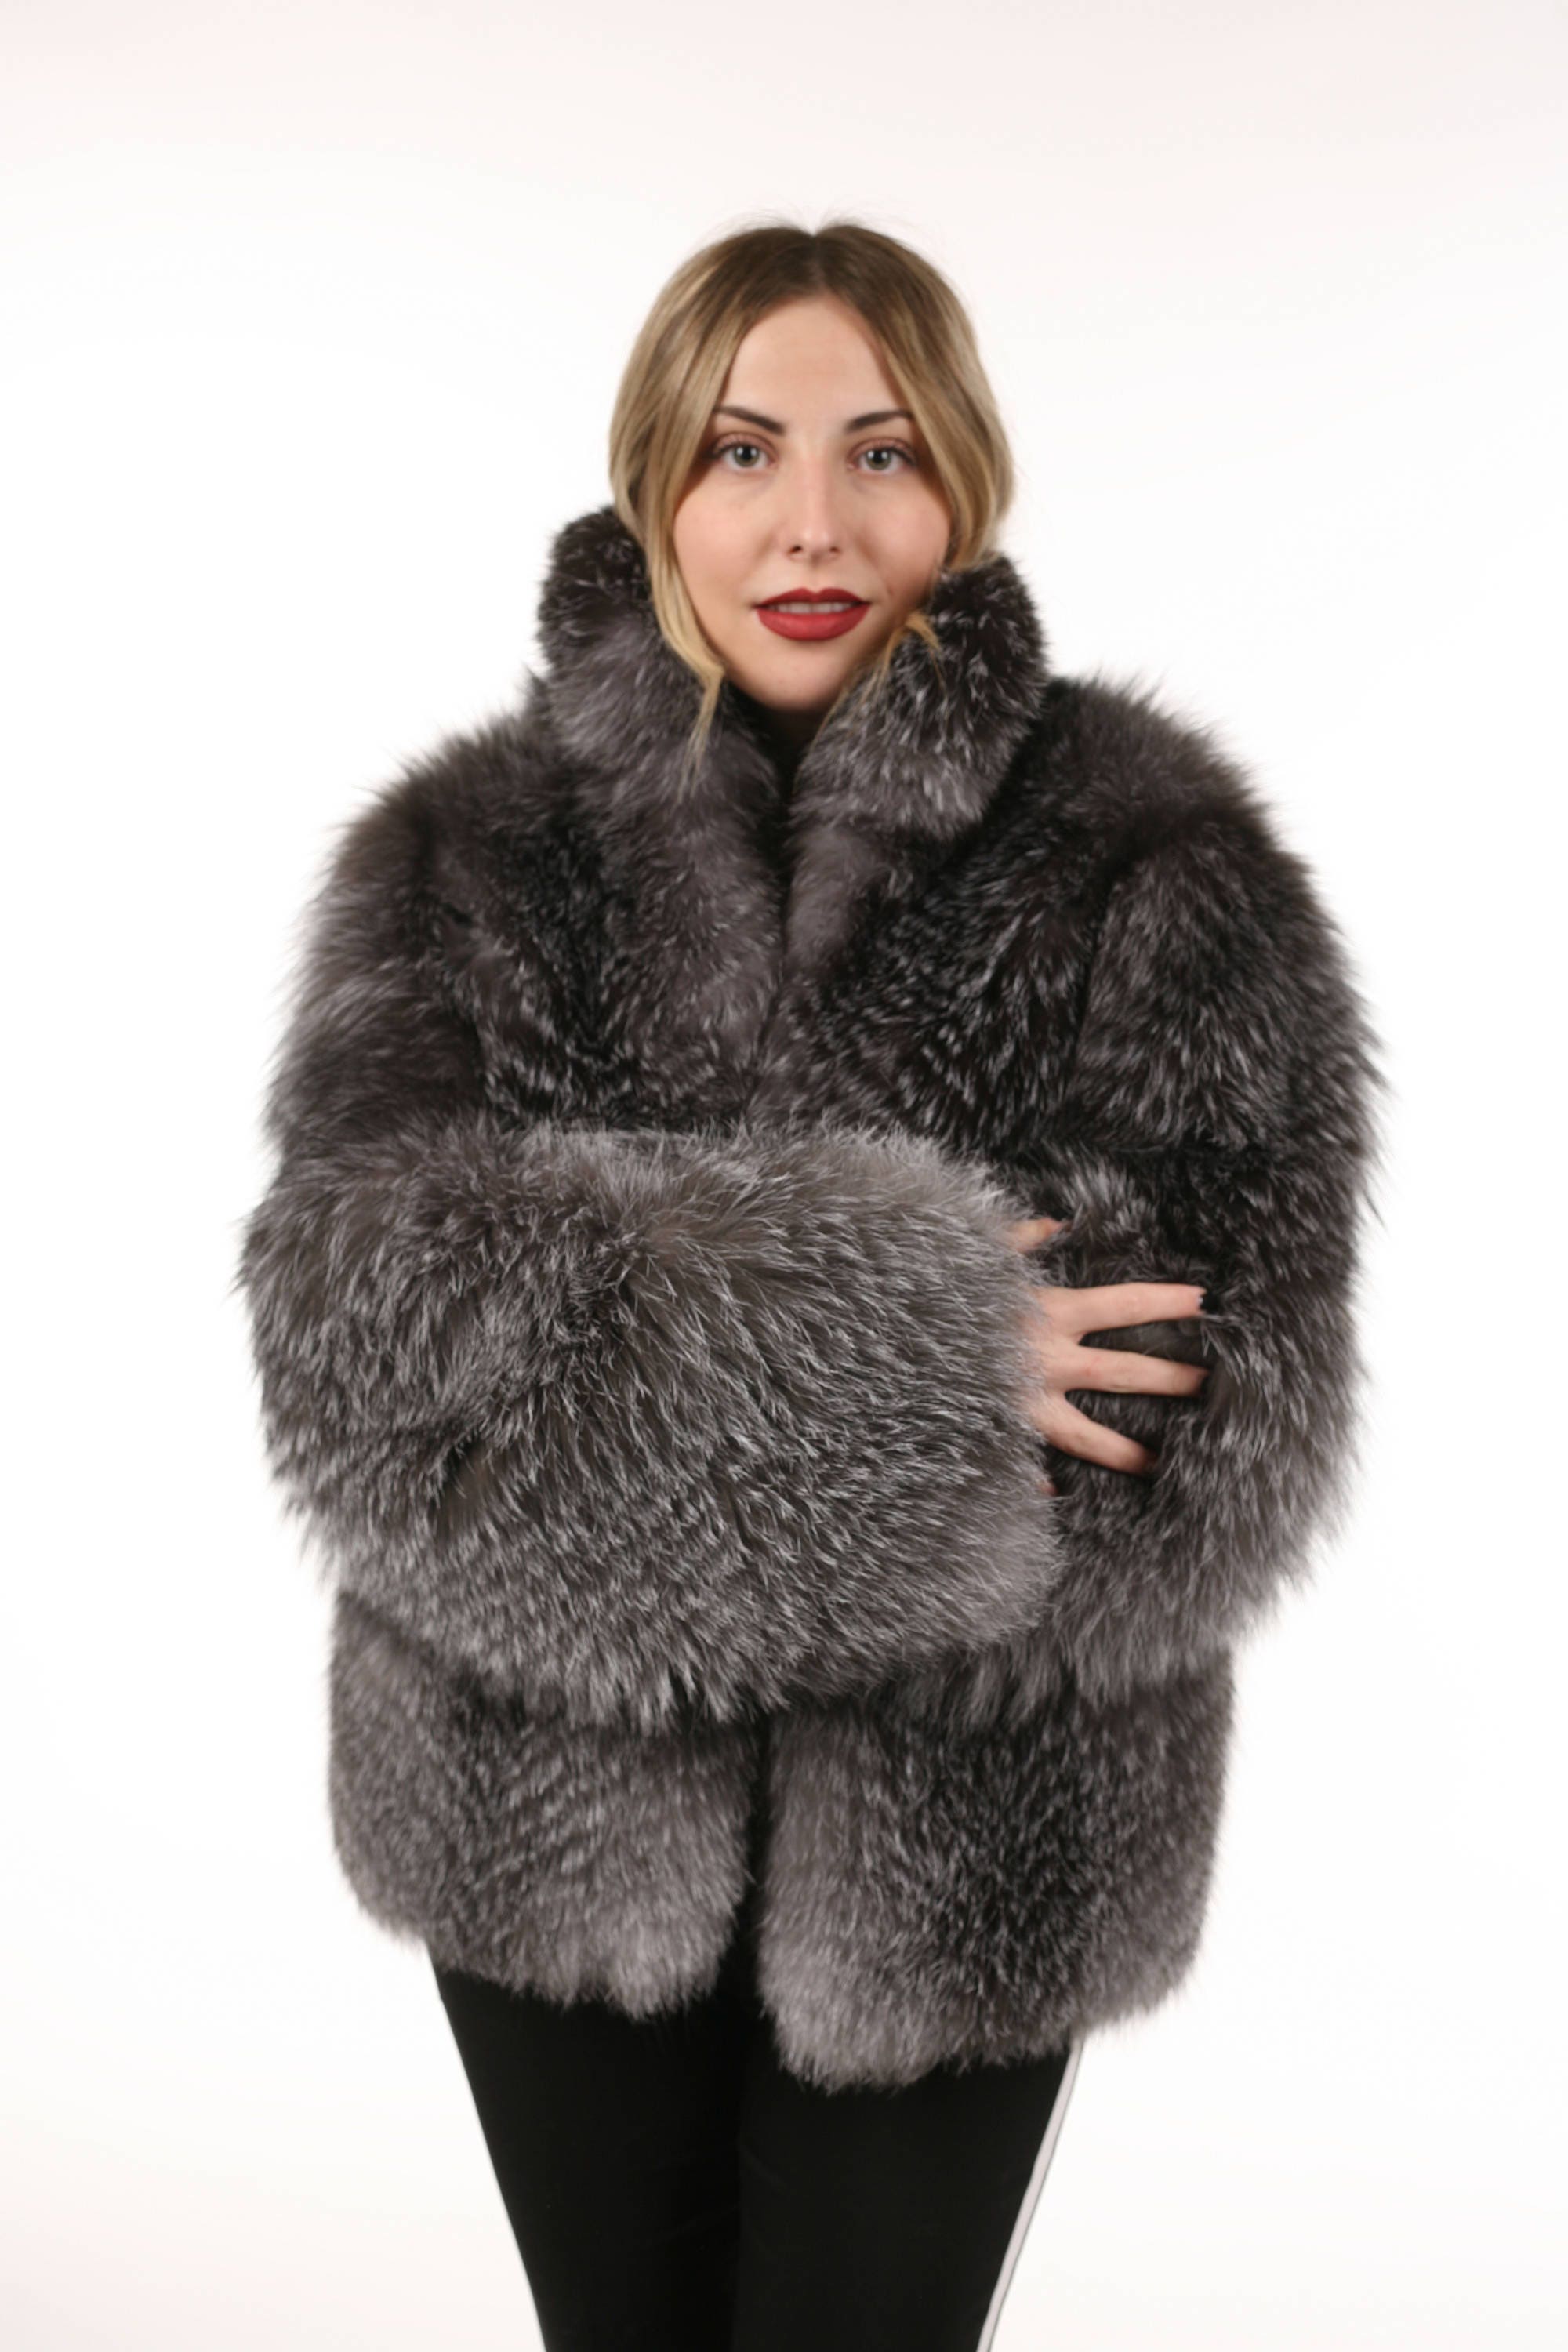 Luxury gift/Blue frost Fur coat/ Fur jacket full skin / | Etsy